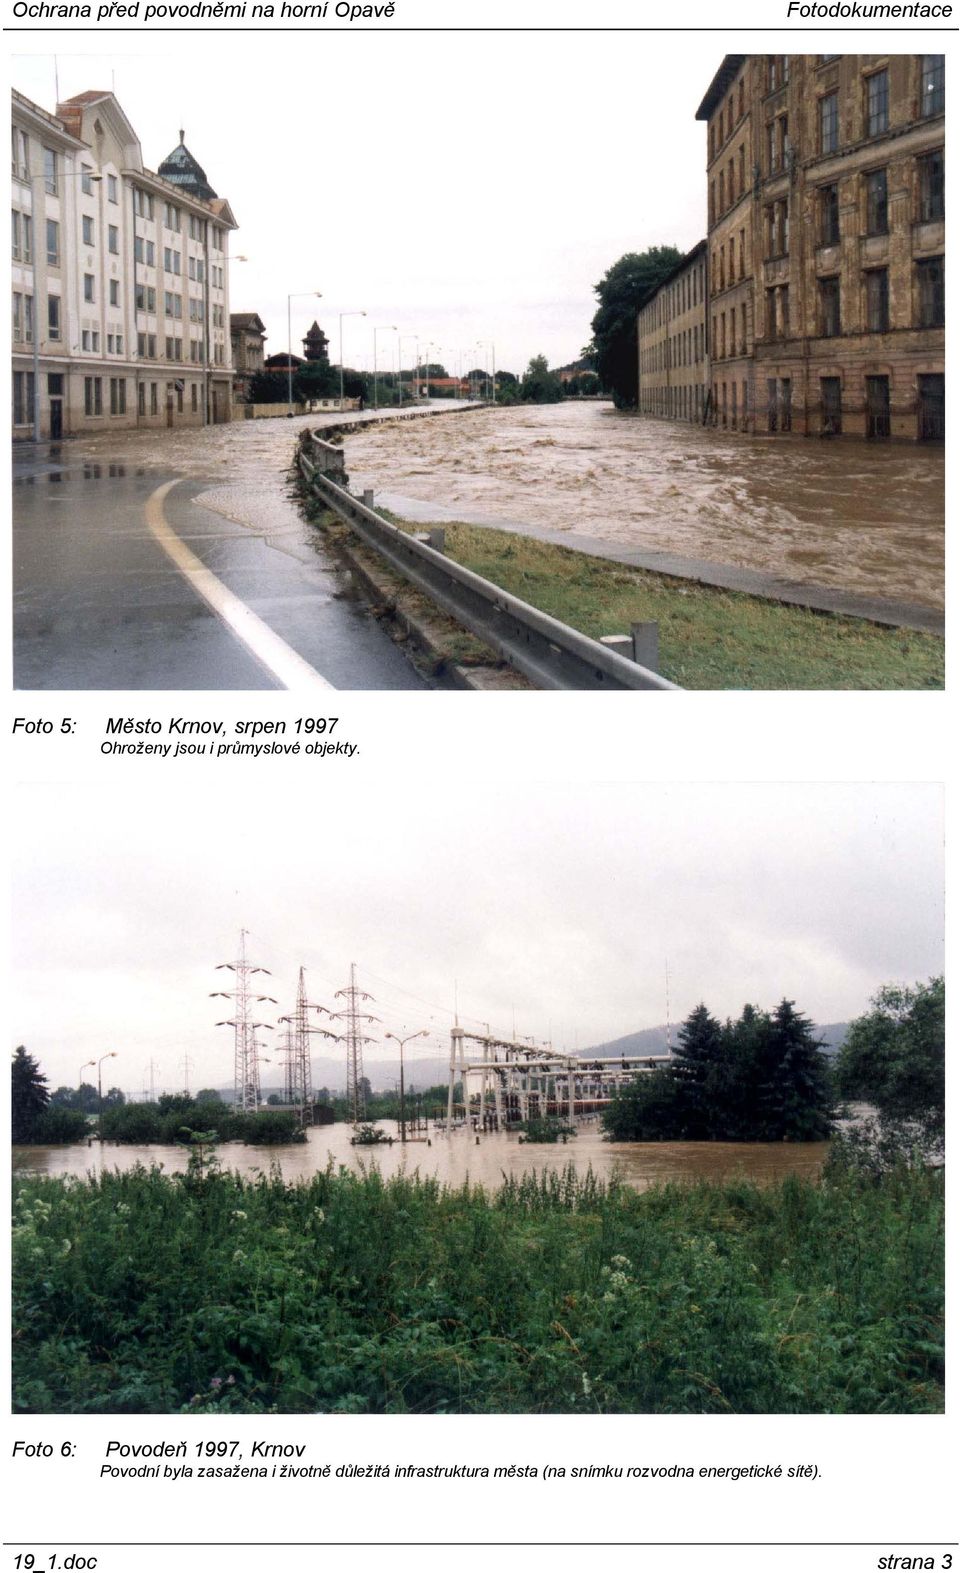 Foto 6: Povodeň 1997, Krnov Povodní byla zasažena i